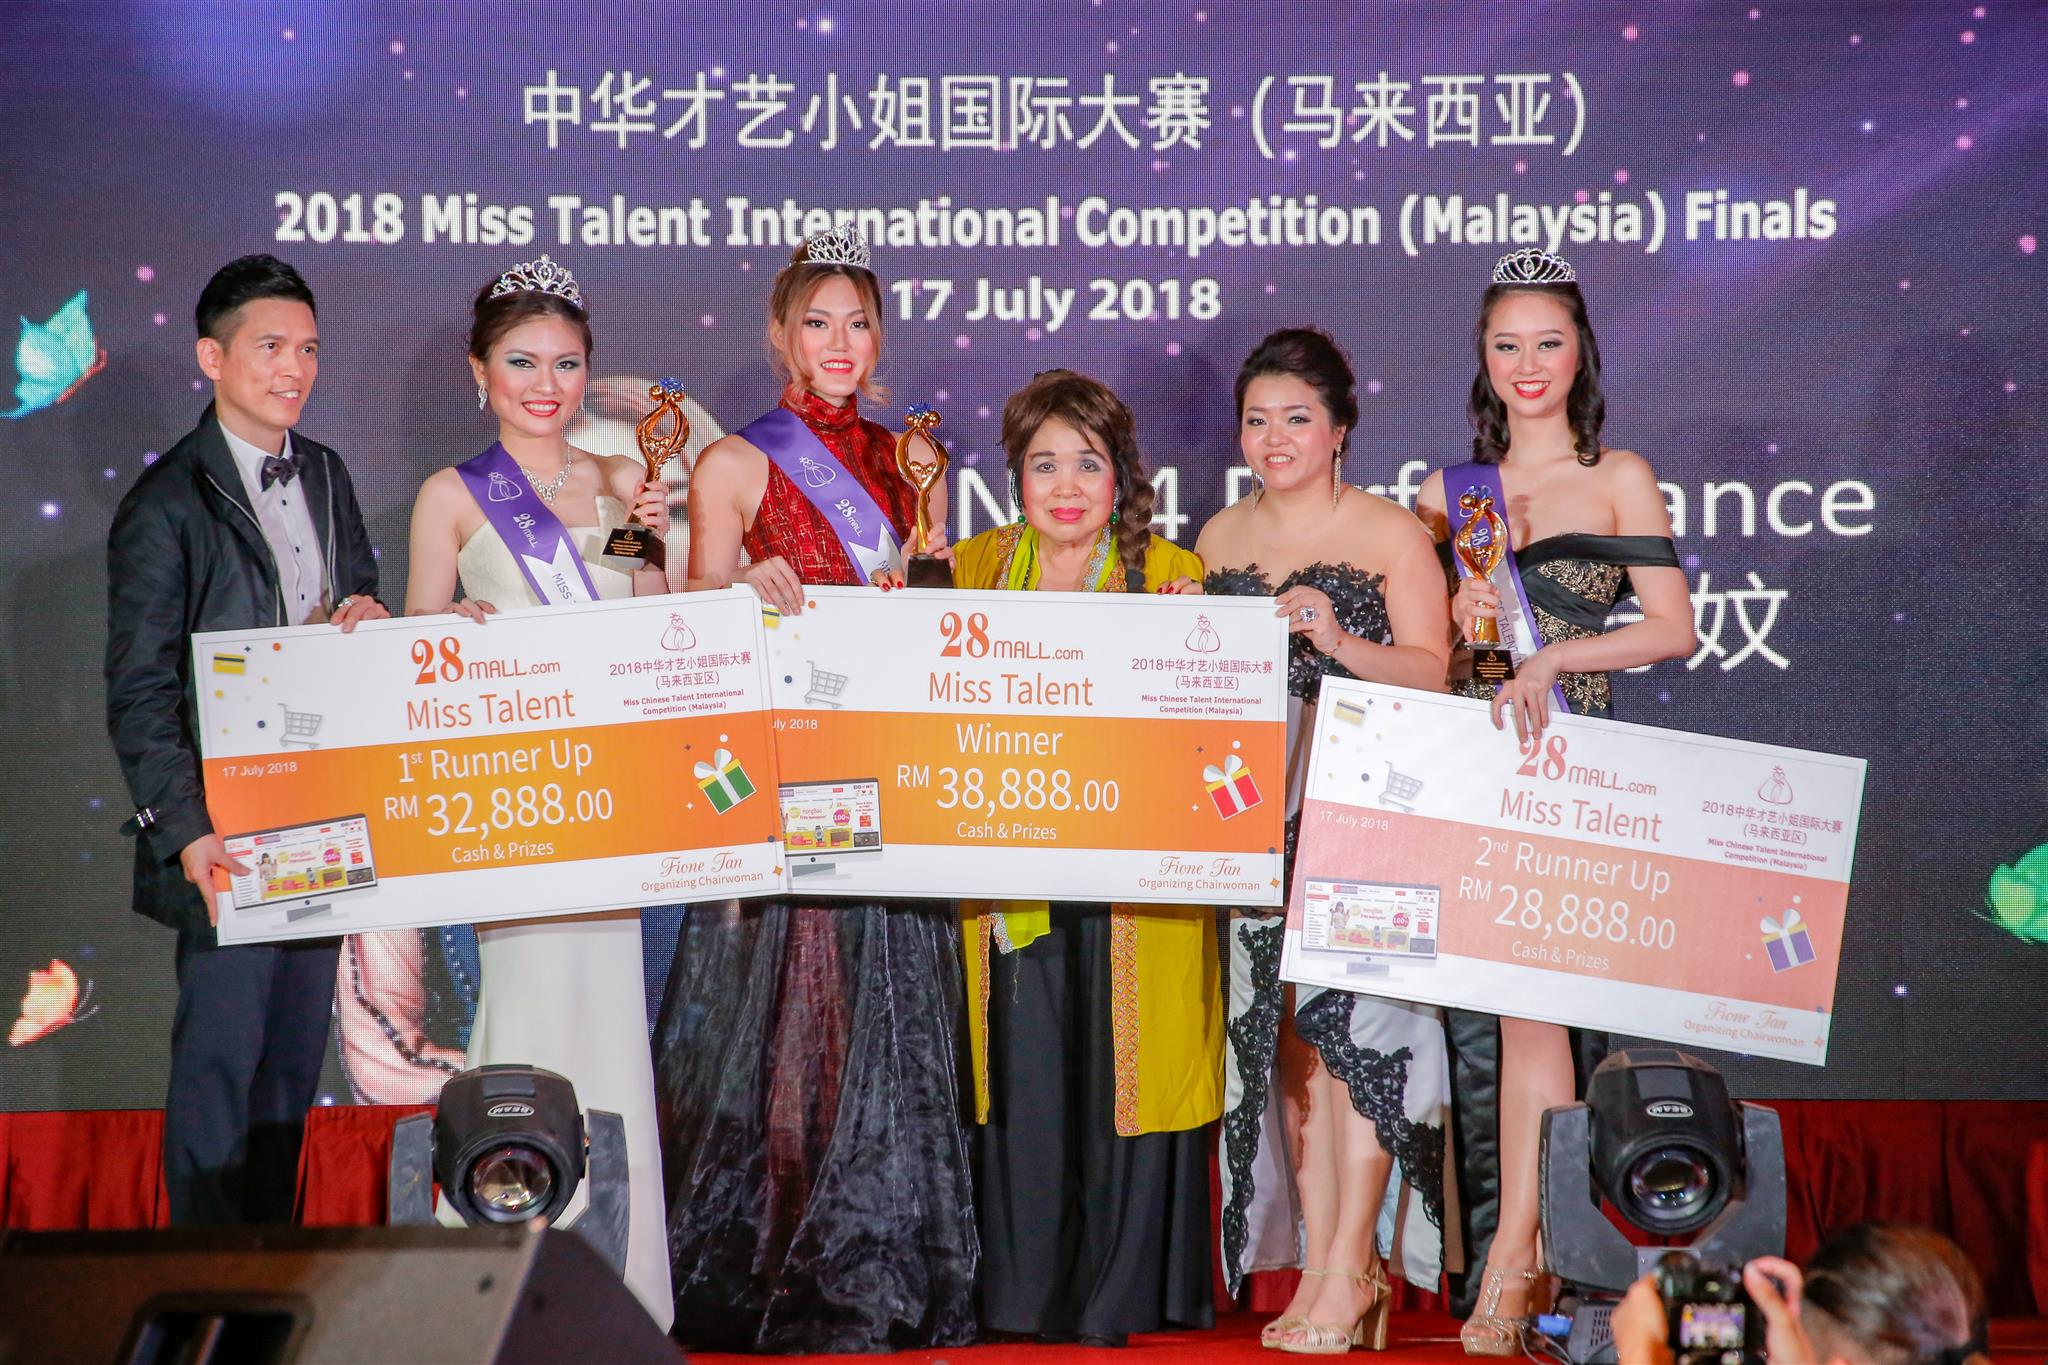 Winners of Miss Talent International Malaysia 2018